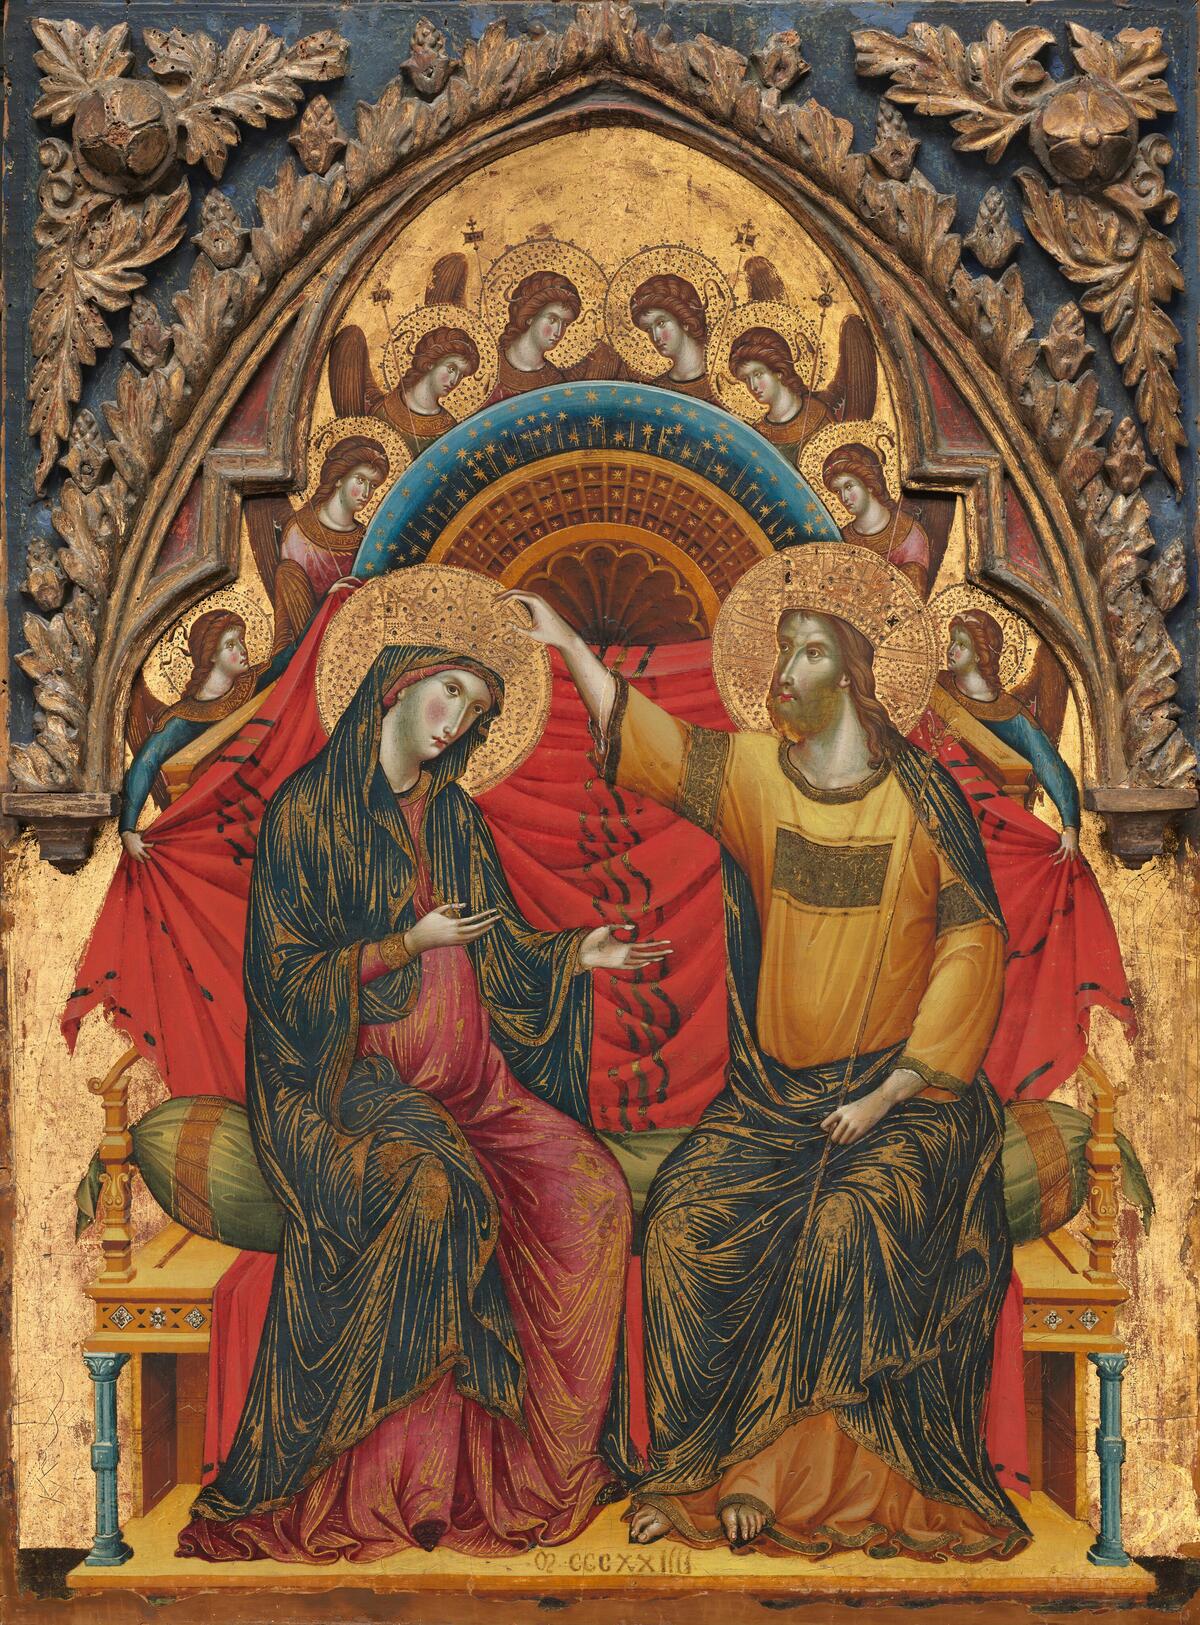 Koristeellinen keskiaikainen maalaus, jossa vasemmalla neitsyt Maria, oikealla Jeesus. Jeesus asettaa Marian päähän kruunua. Tausta on kullattu ja hahmojen vaatteet ovat värikkäät.